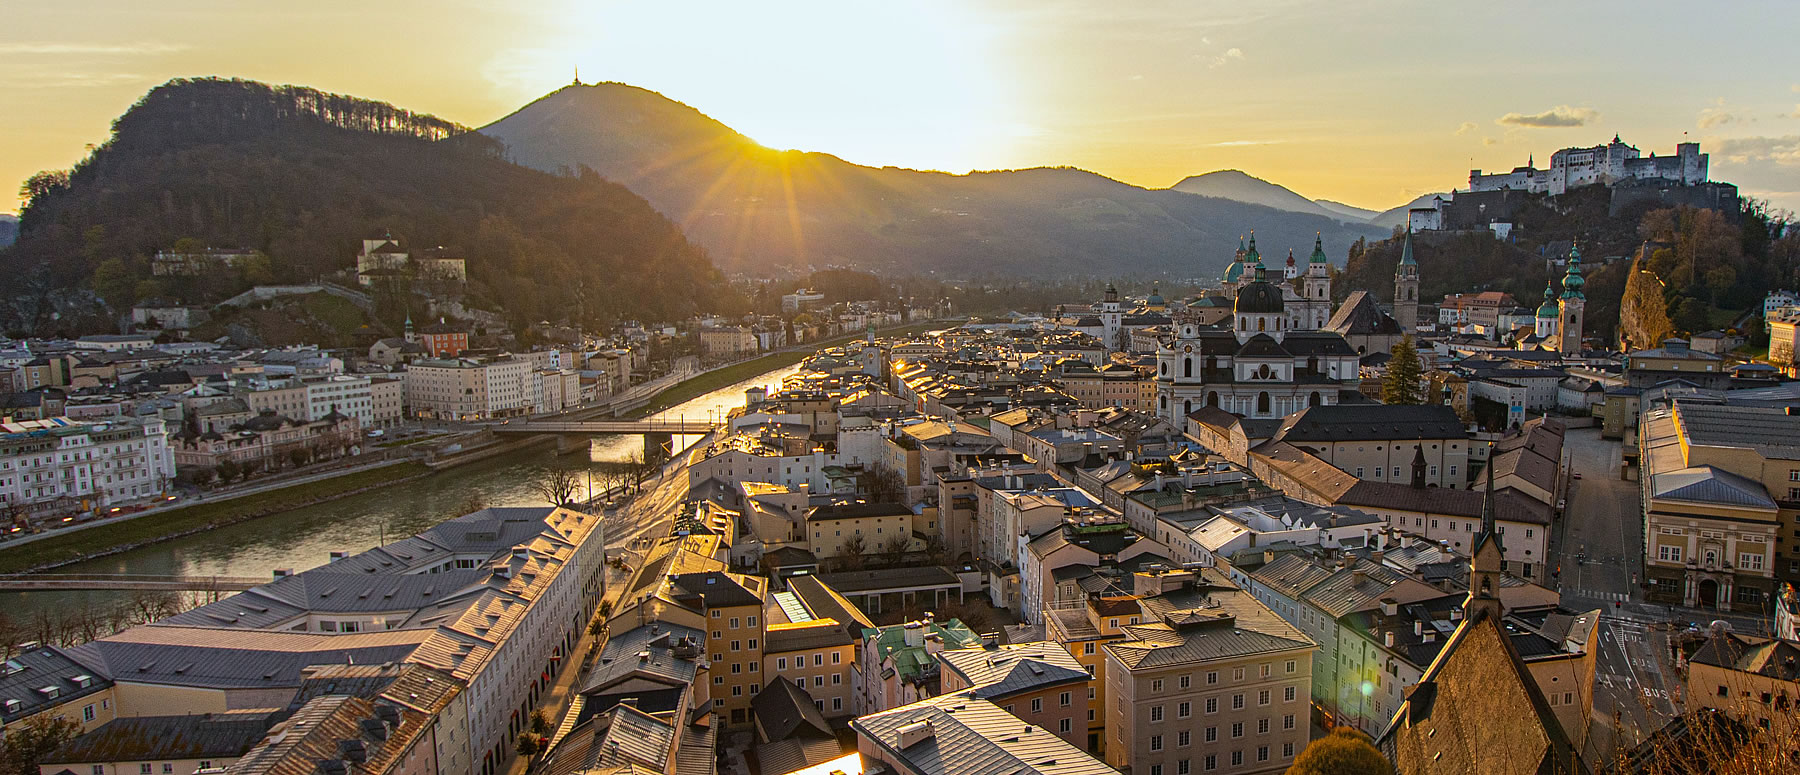 Sommerliches Salzburg bei Sonnenaufgang